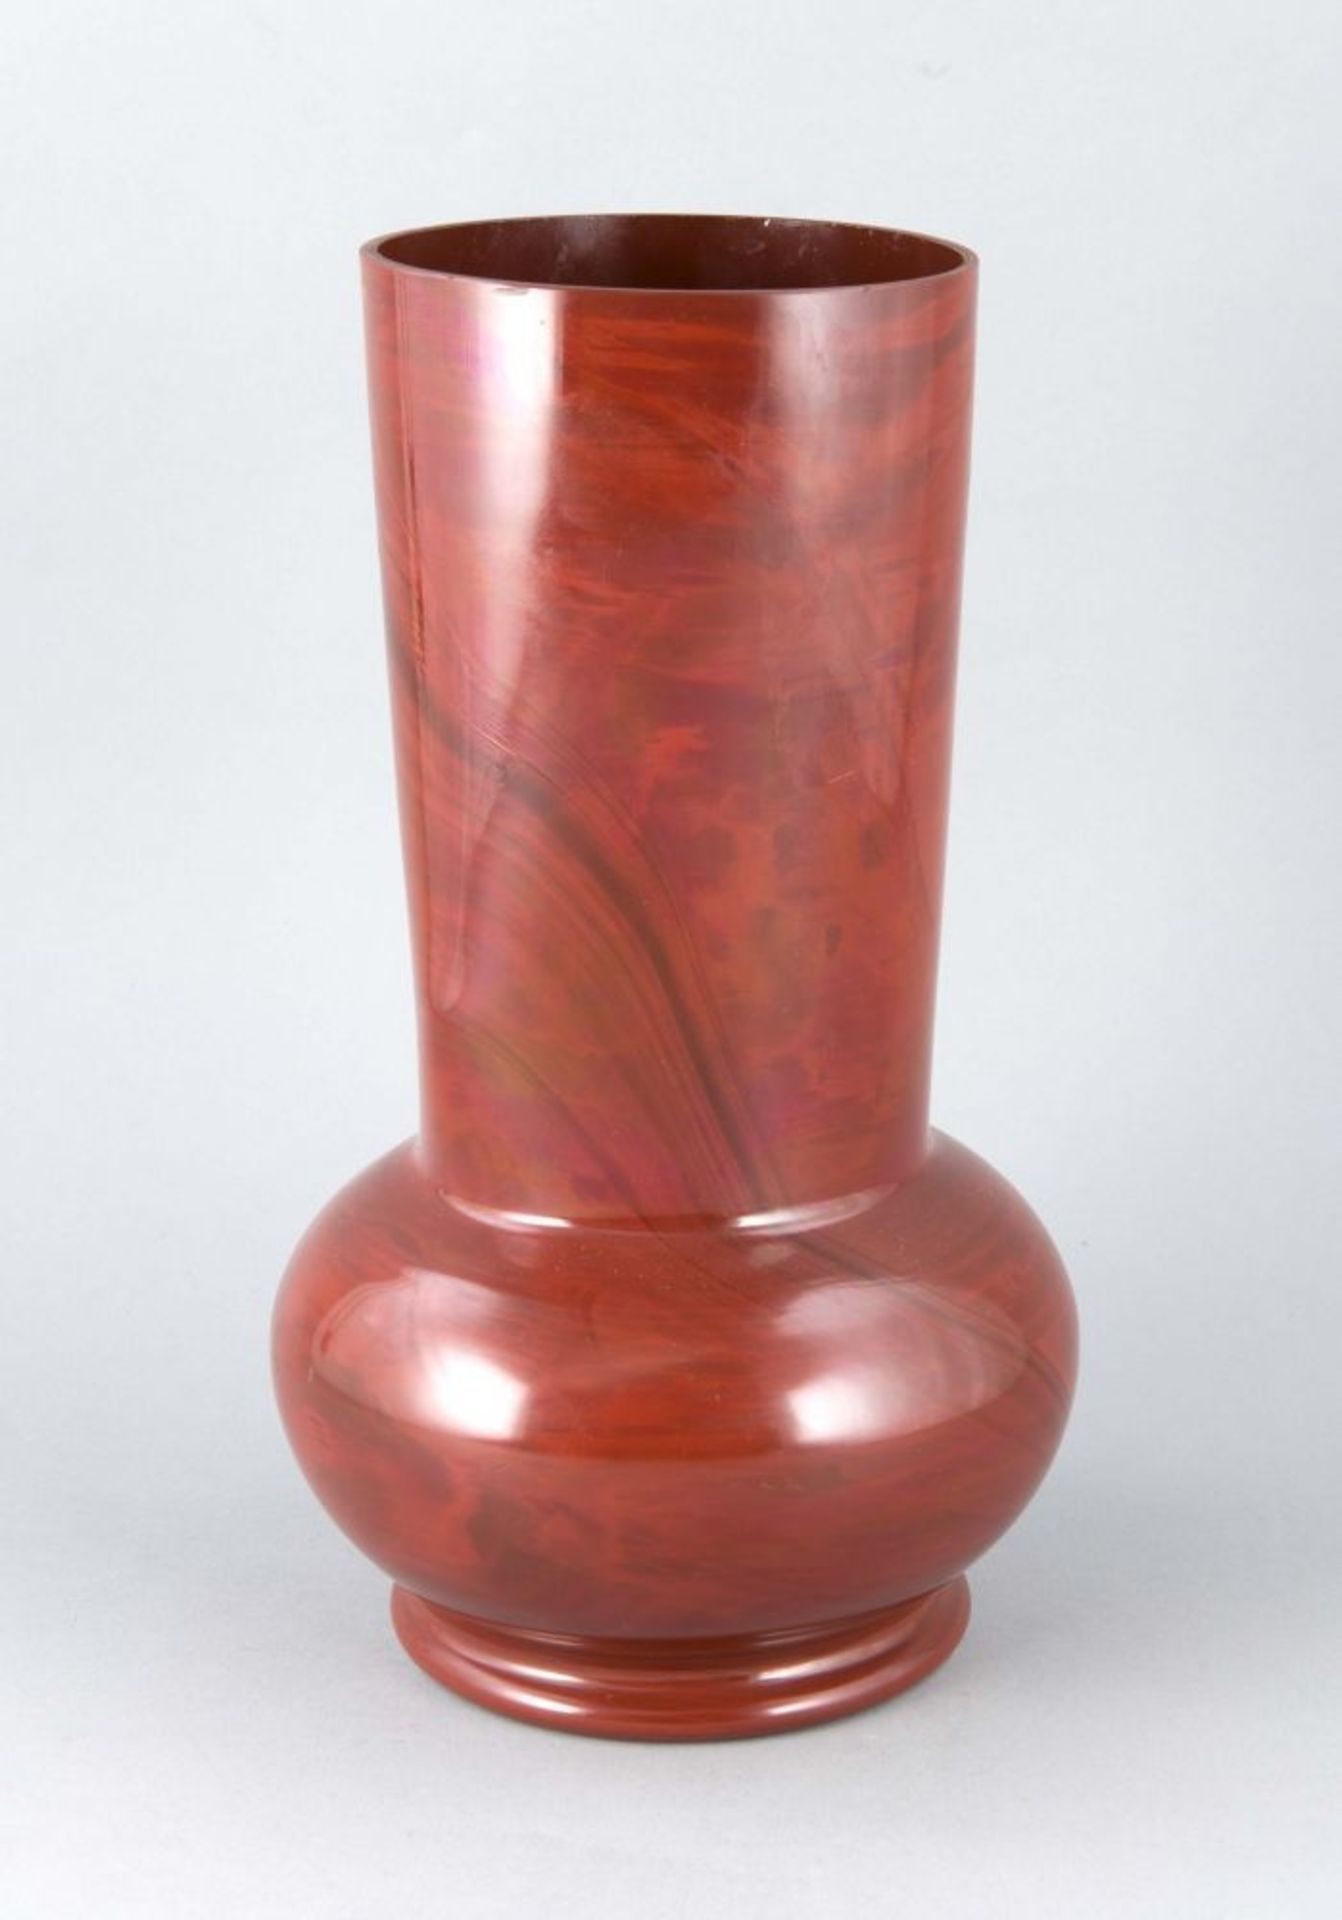 Vase, 20. Jh., runder Stand, bauchiger Korpus, langer, leicht konischer Hals, ziegelrotes,